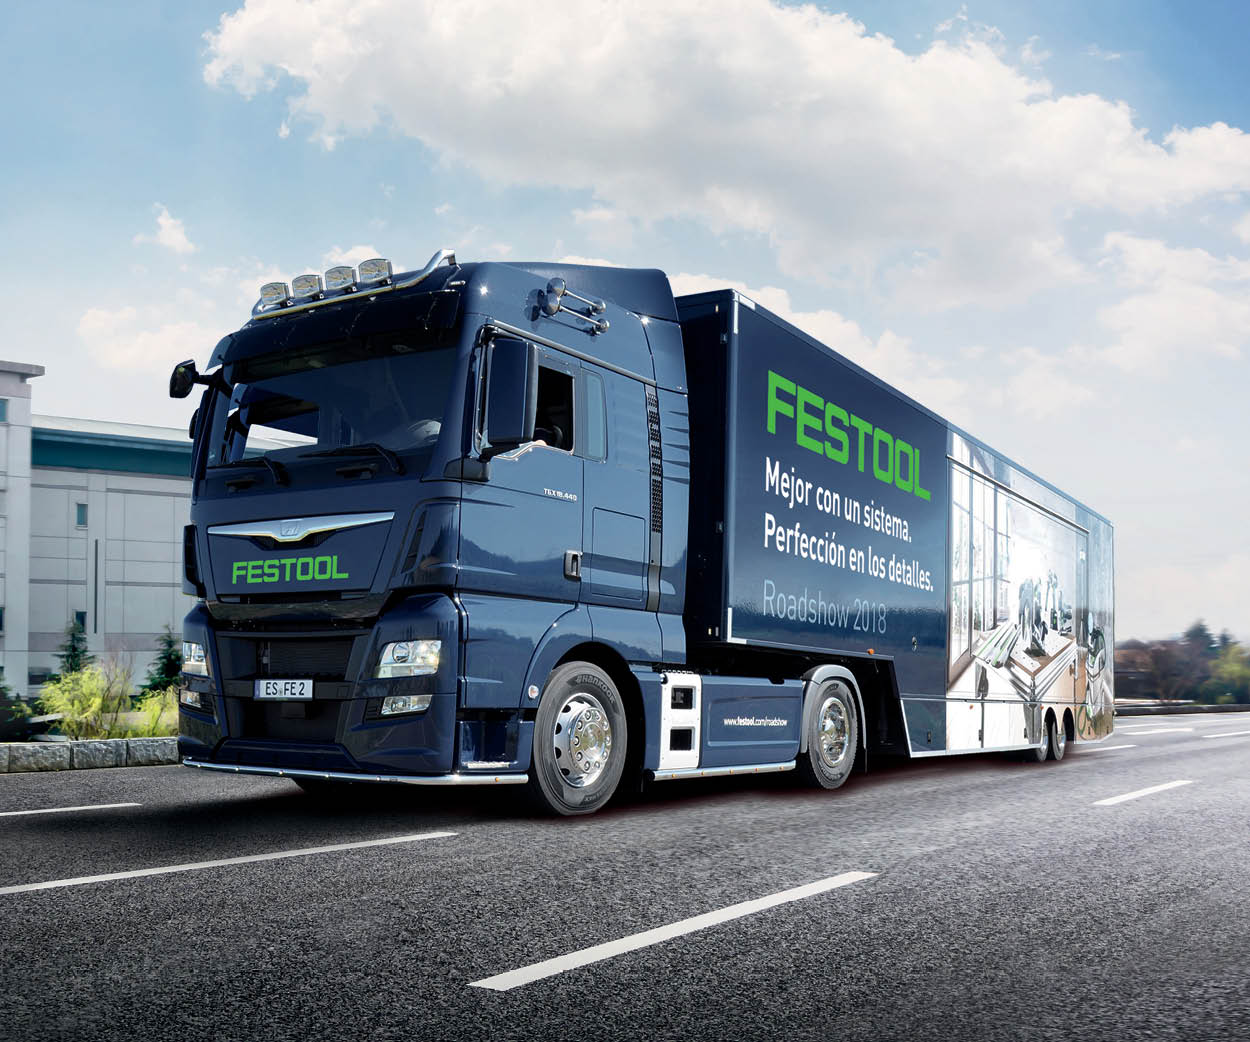 FESTOOL visita España con su camión promocional